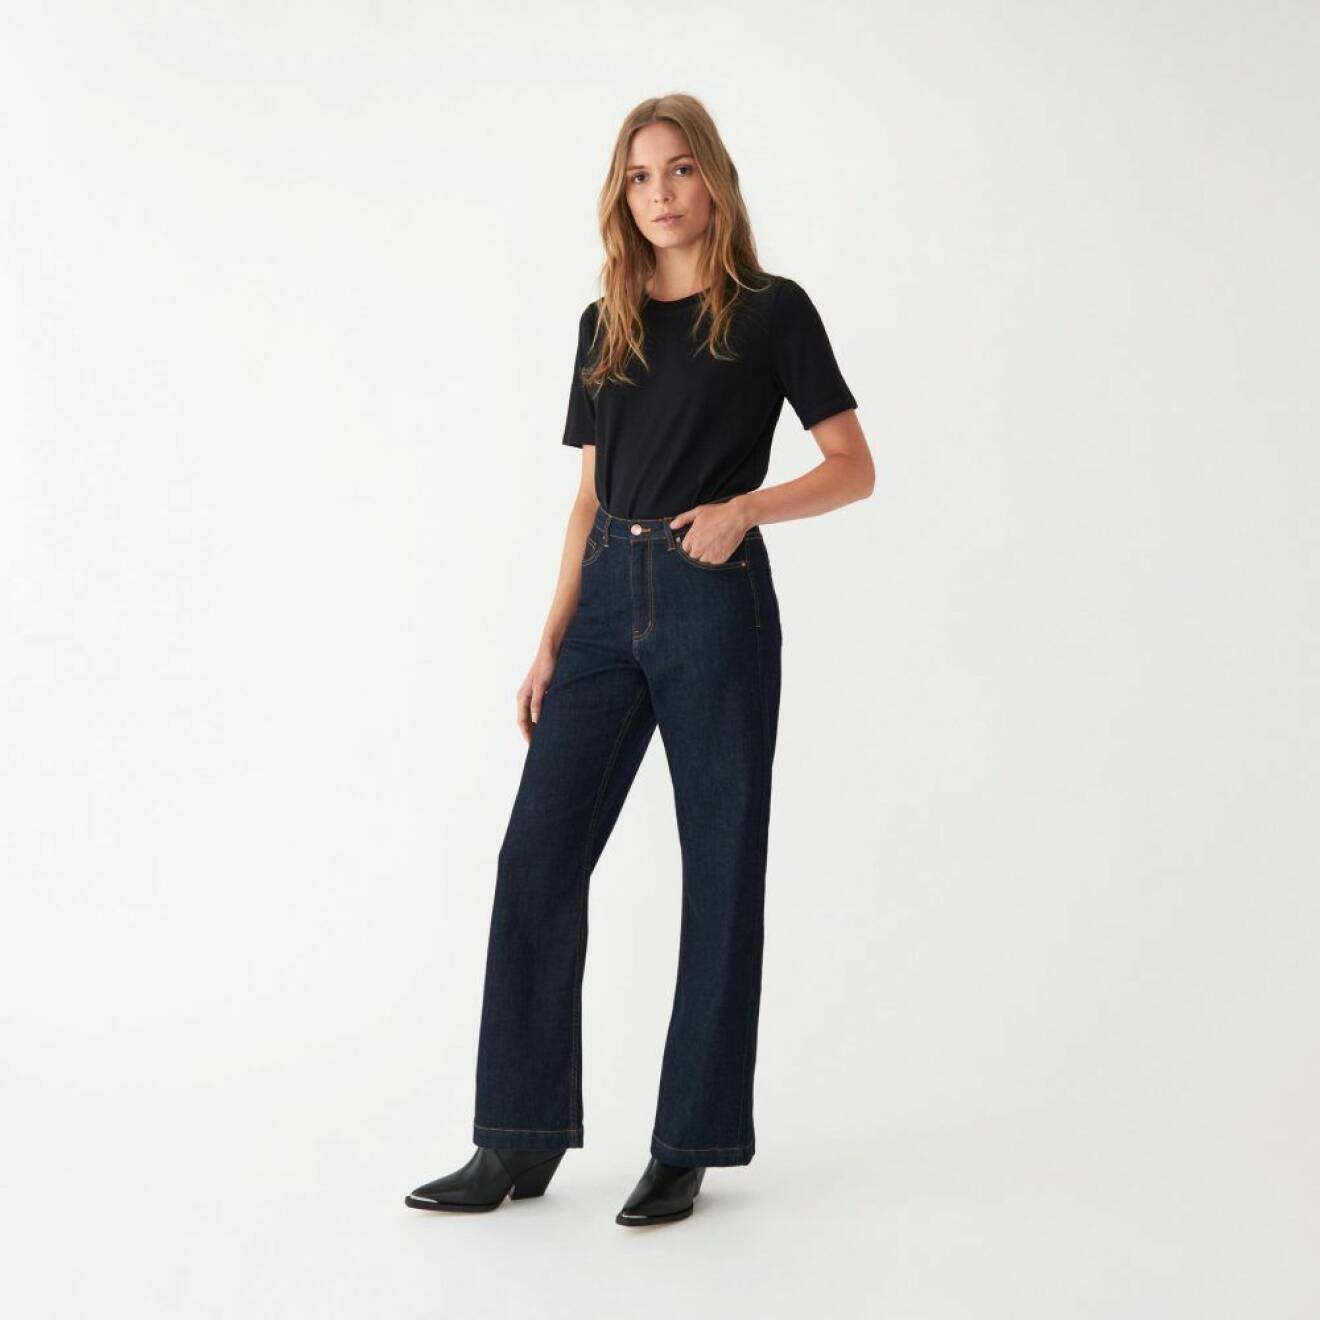 Mörkblå vida jeans med klassiskt uttryck från Carin Wester.